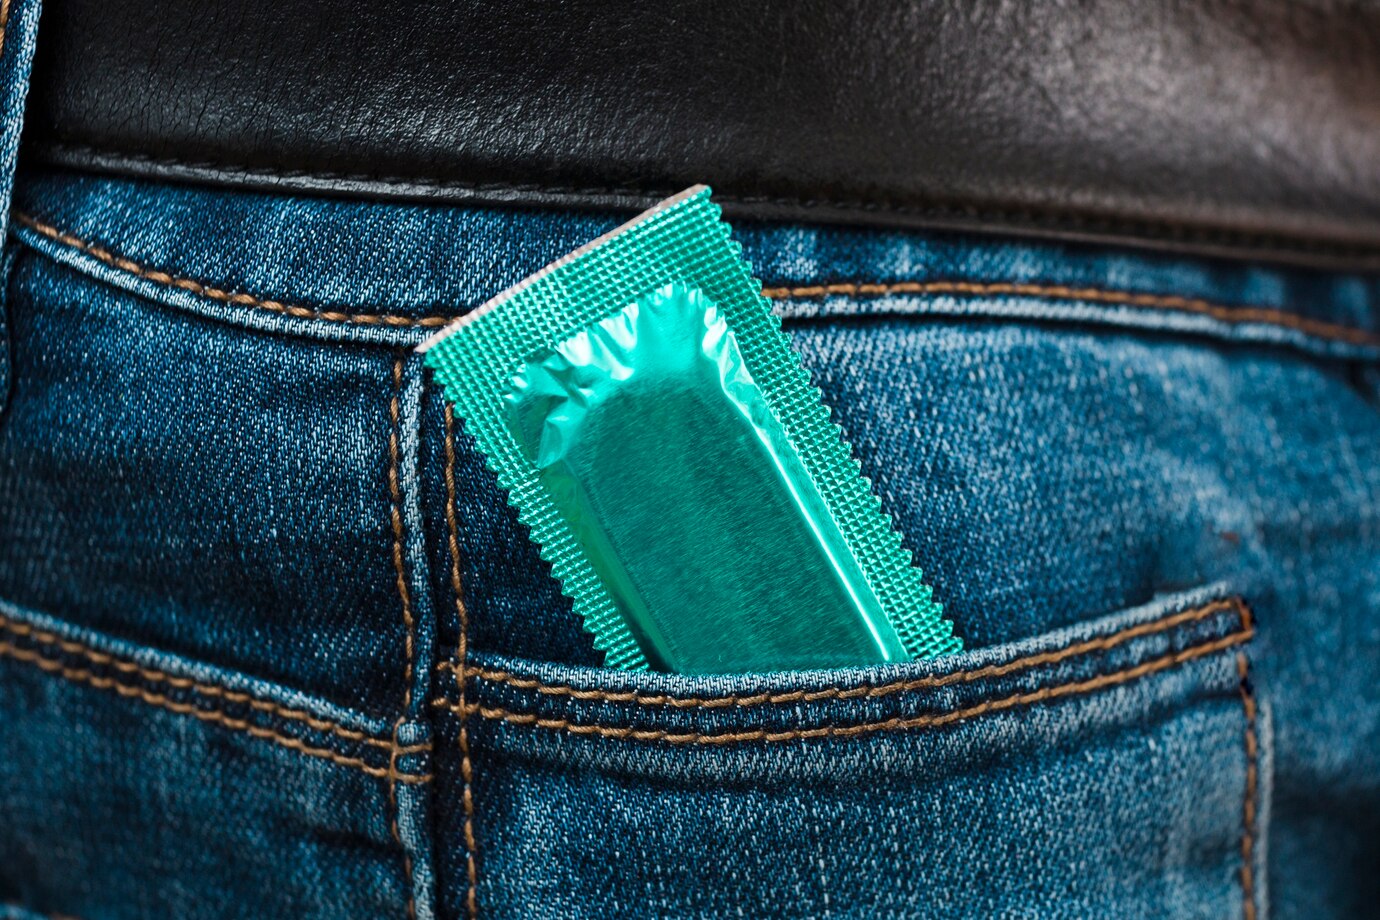 kondom v kapse